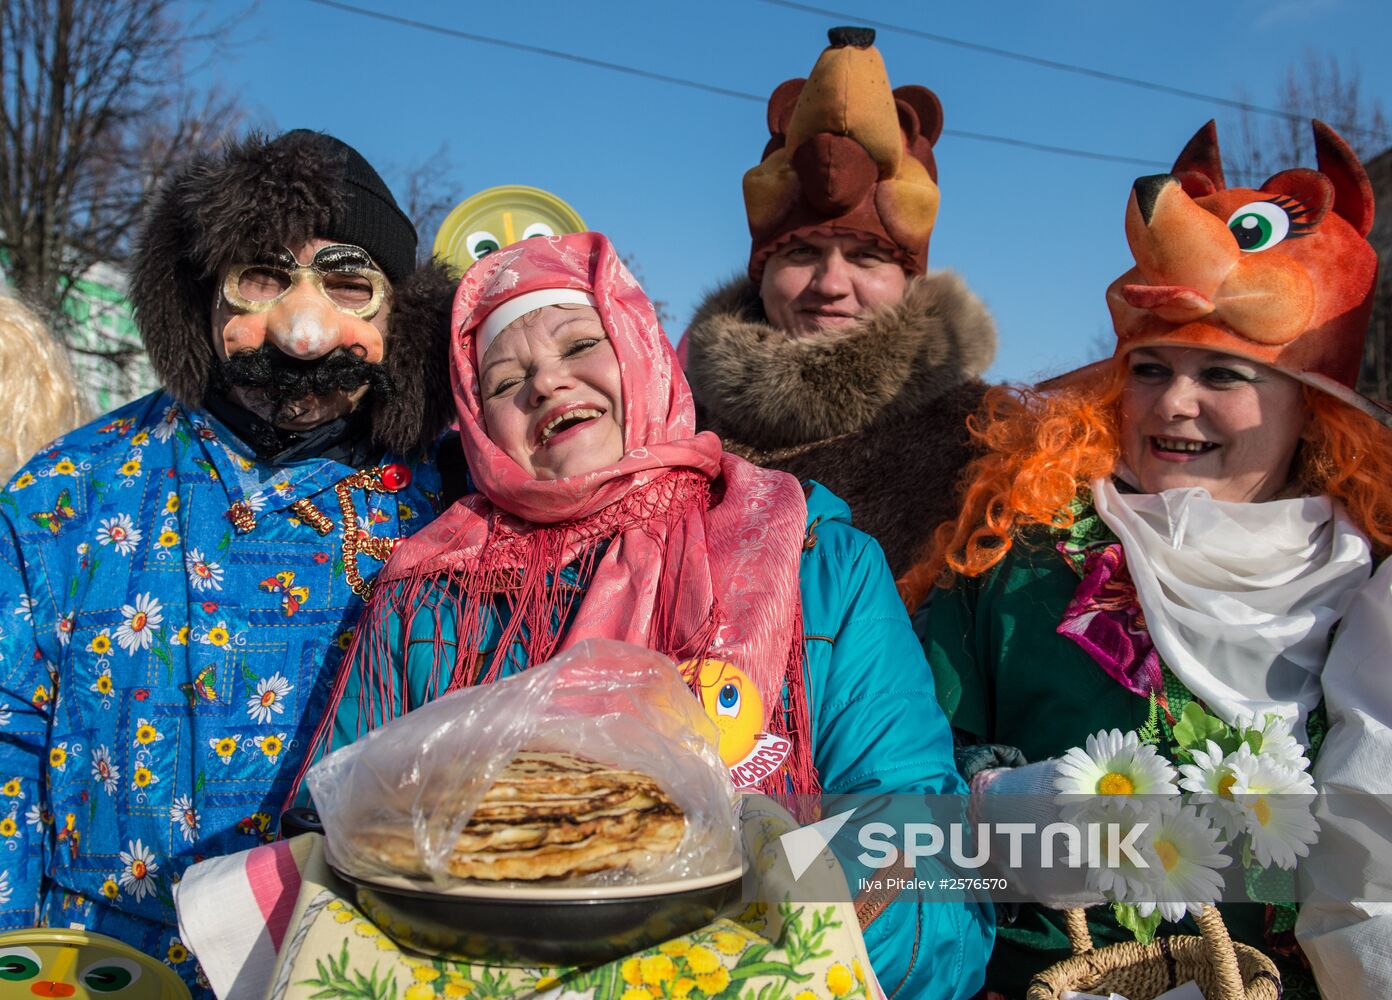 Maslenitsa celebration in Yuryevo-Polskoye